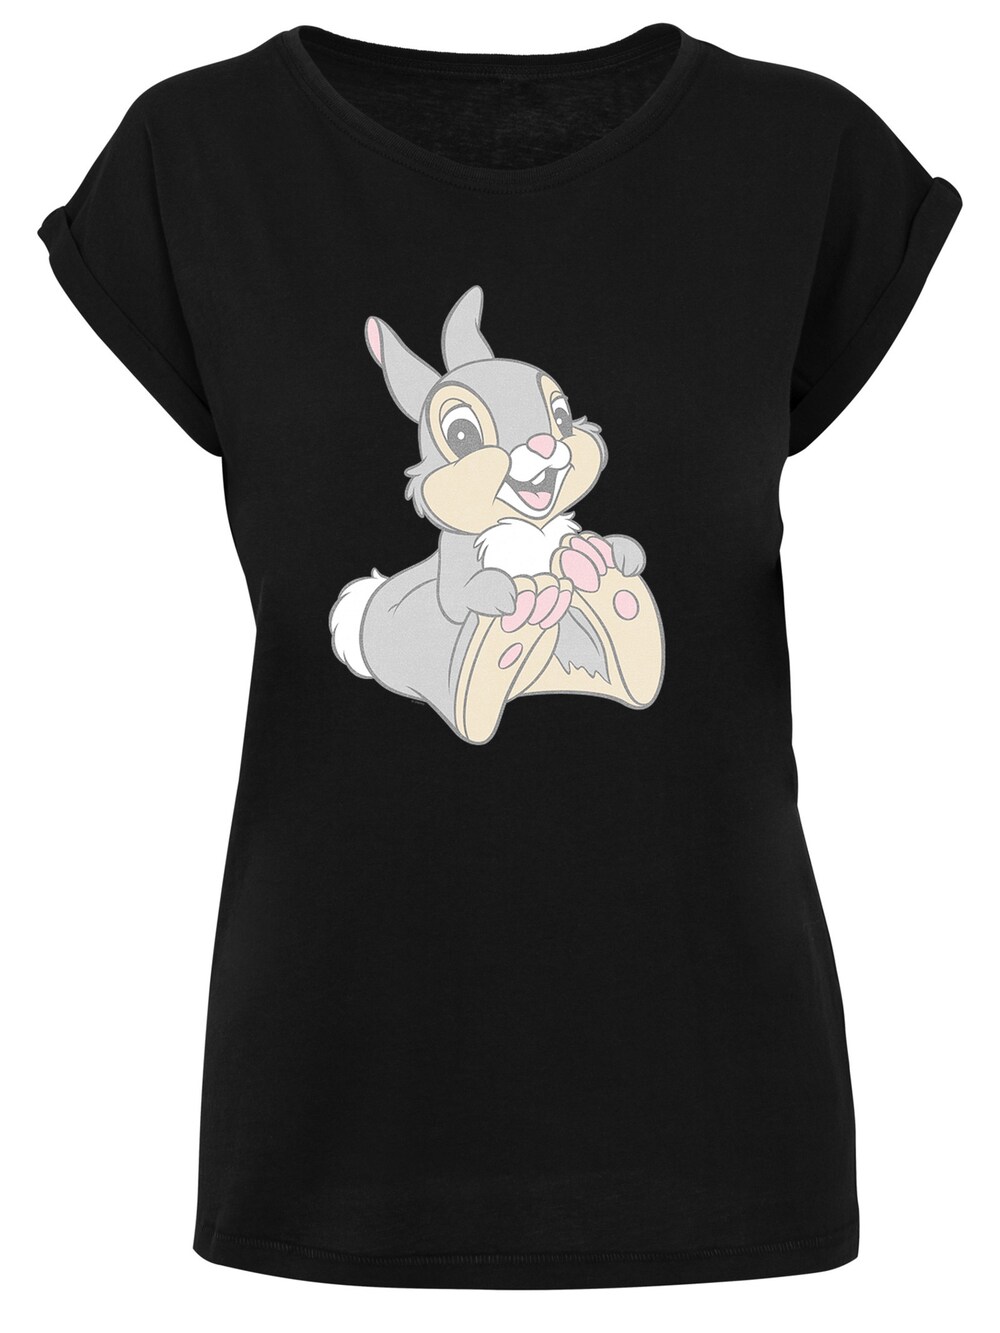 Рубашка F4Nt4Stic Disney Classics Thumper, черный